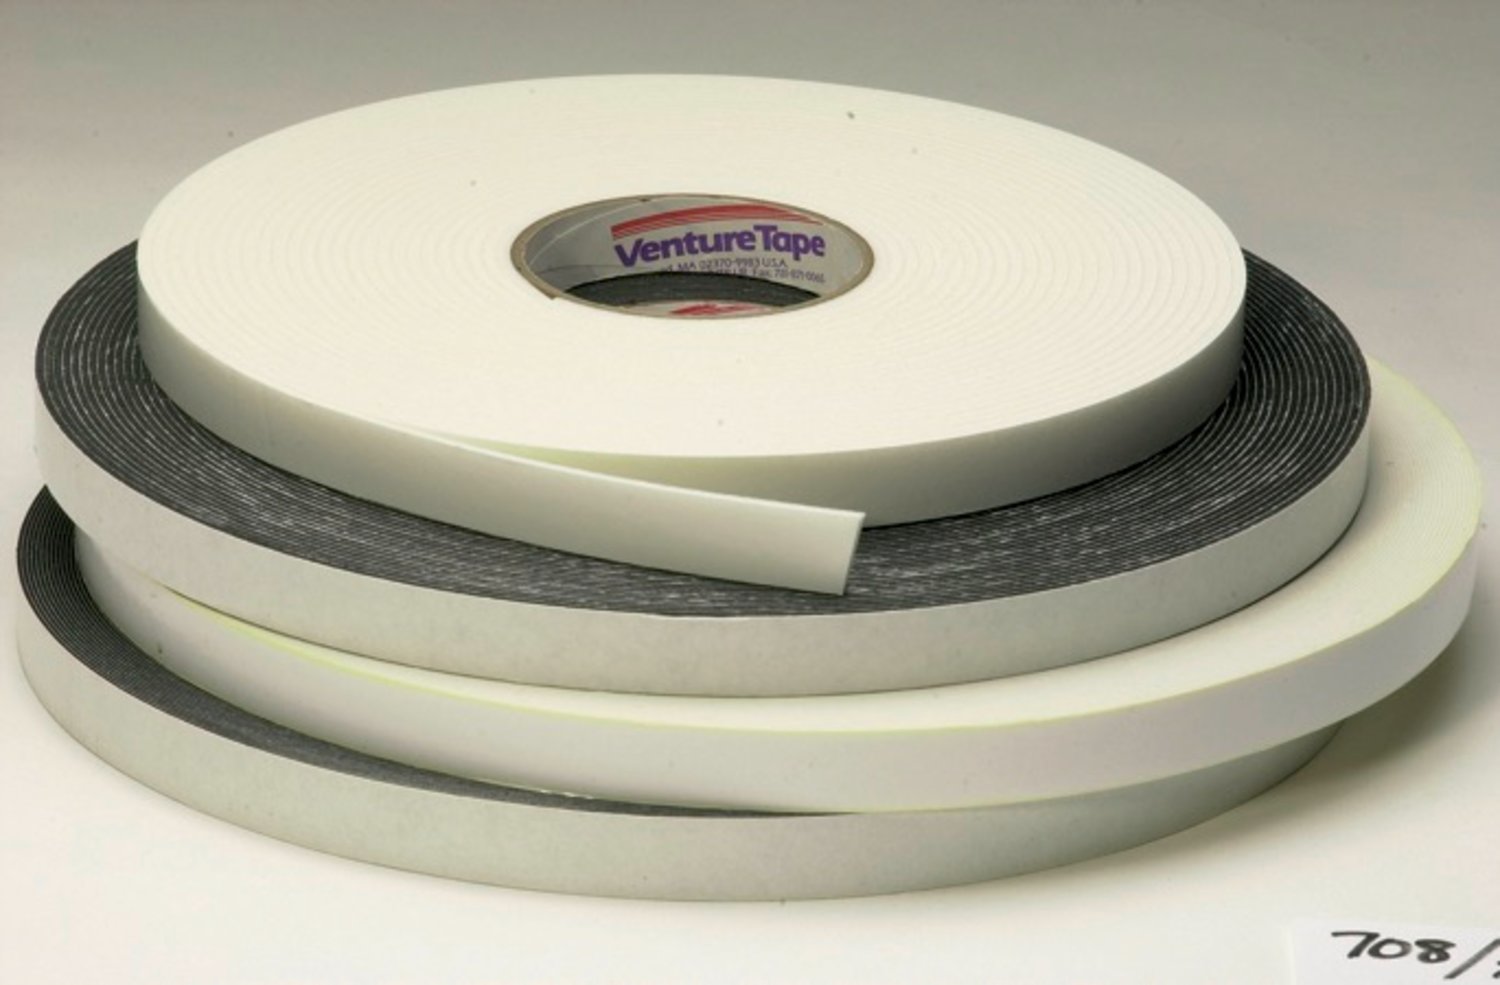 7100043921 - 3M Venture Tape Double Sided Polyethylene Foam Glazing Tape VG708,
Black, 3/8 in x 85 ft, 125 mil, 53 rolls per case